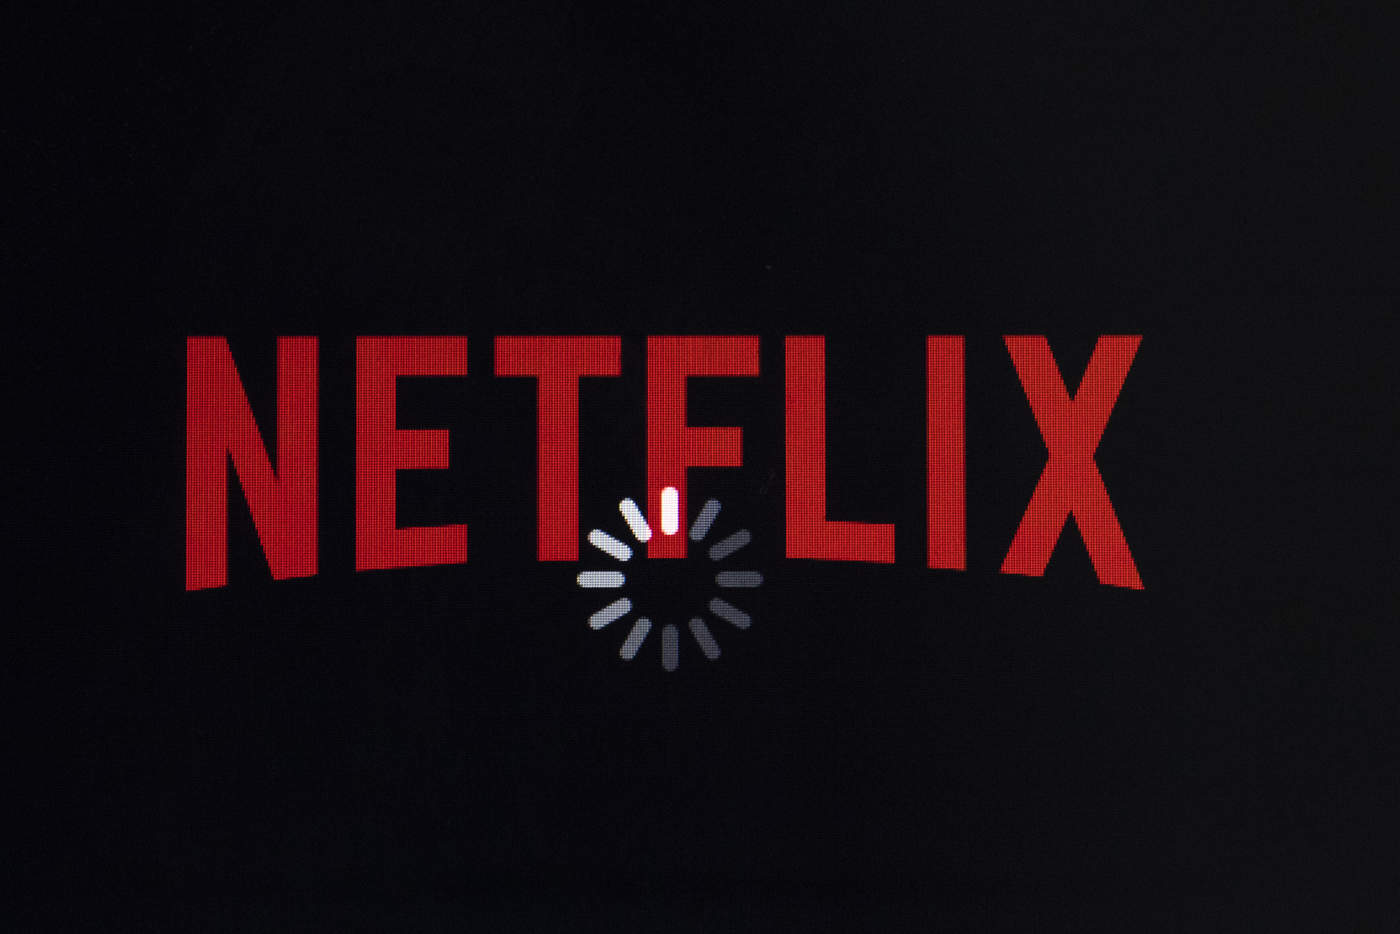 Netflix mantendrá precio de suscripción en México